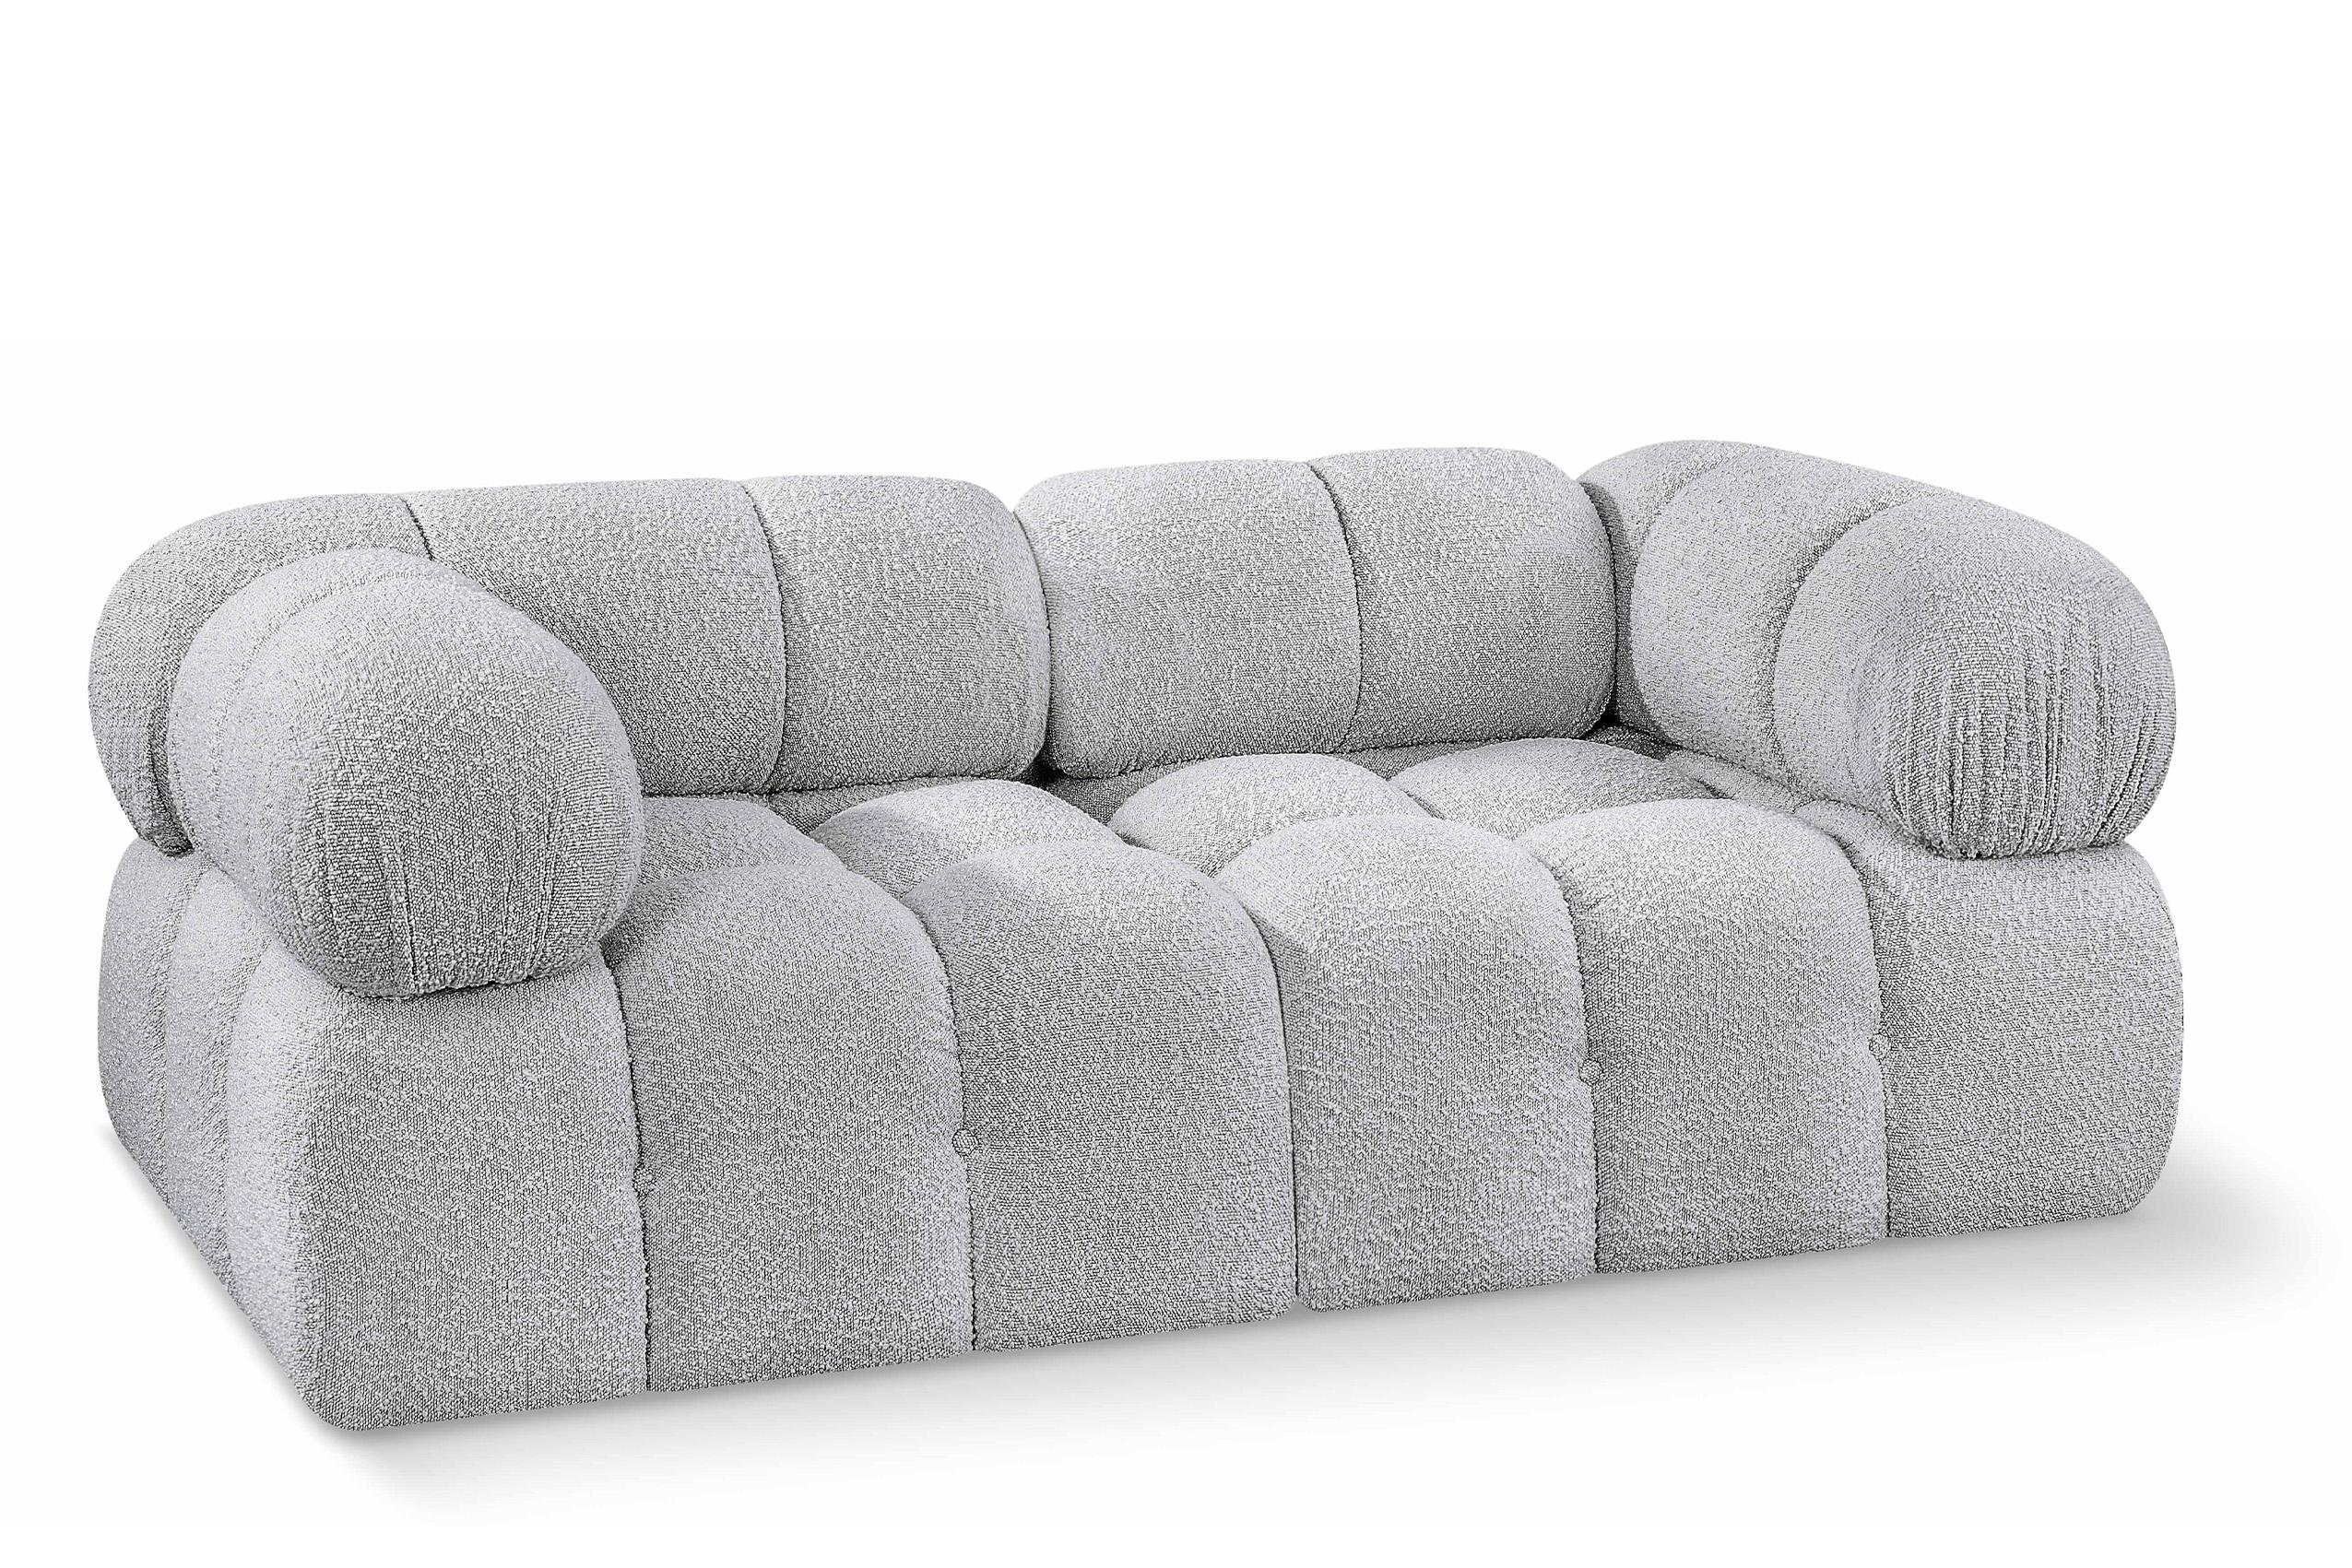 Contemporary, Modern Modular Sofa AMES 611Grey-S68A 611Grey-S68A in Gray 